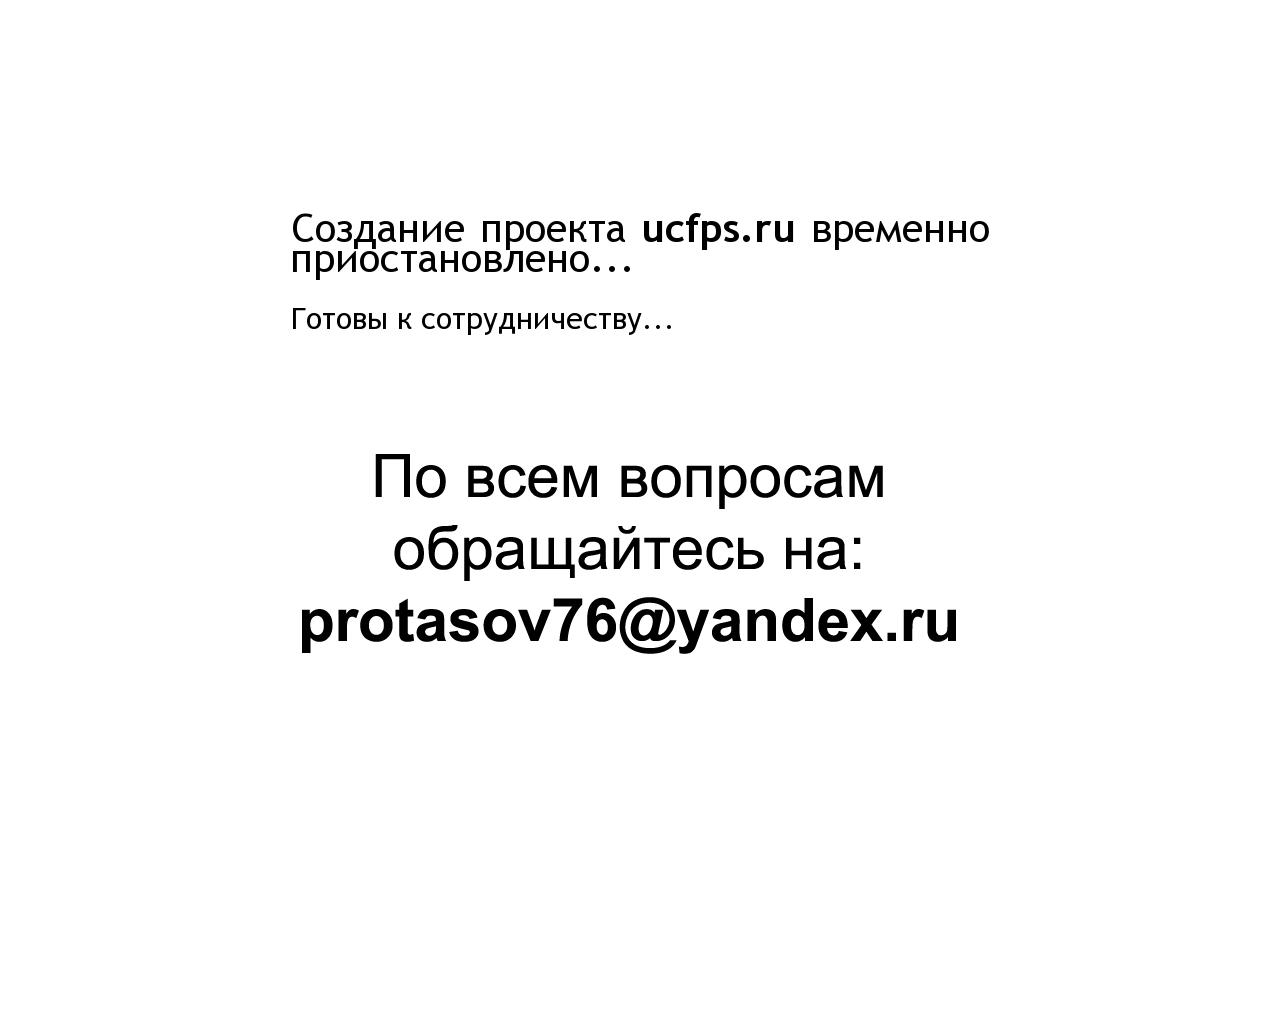 Изображение сайта ucfps.ru в разрешении 1280x1024